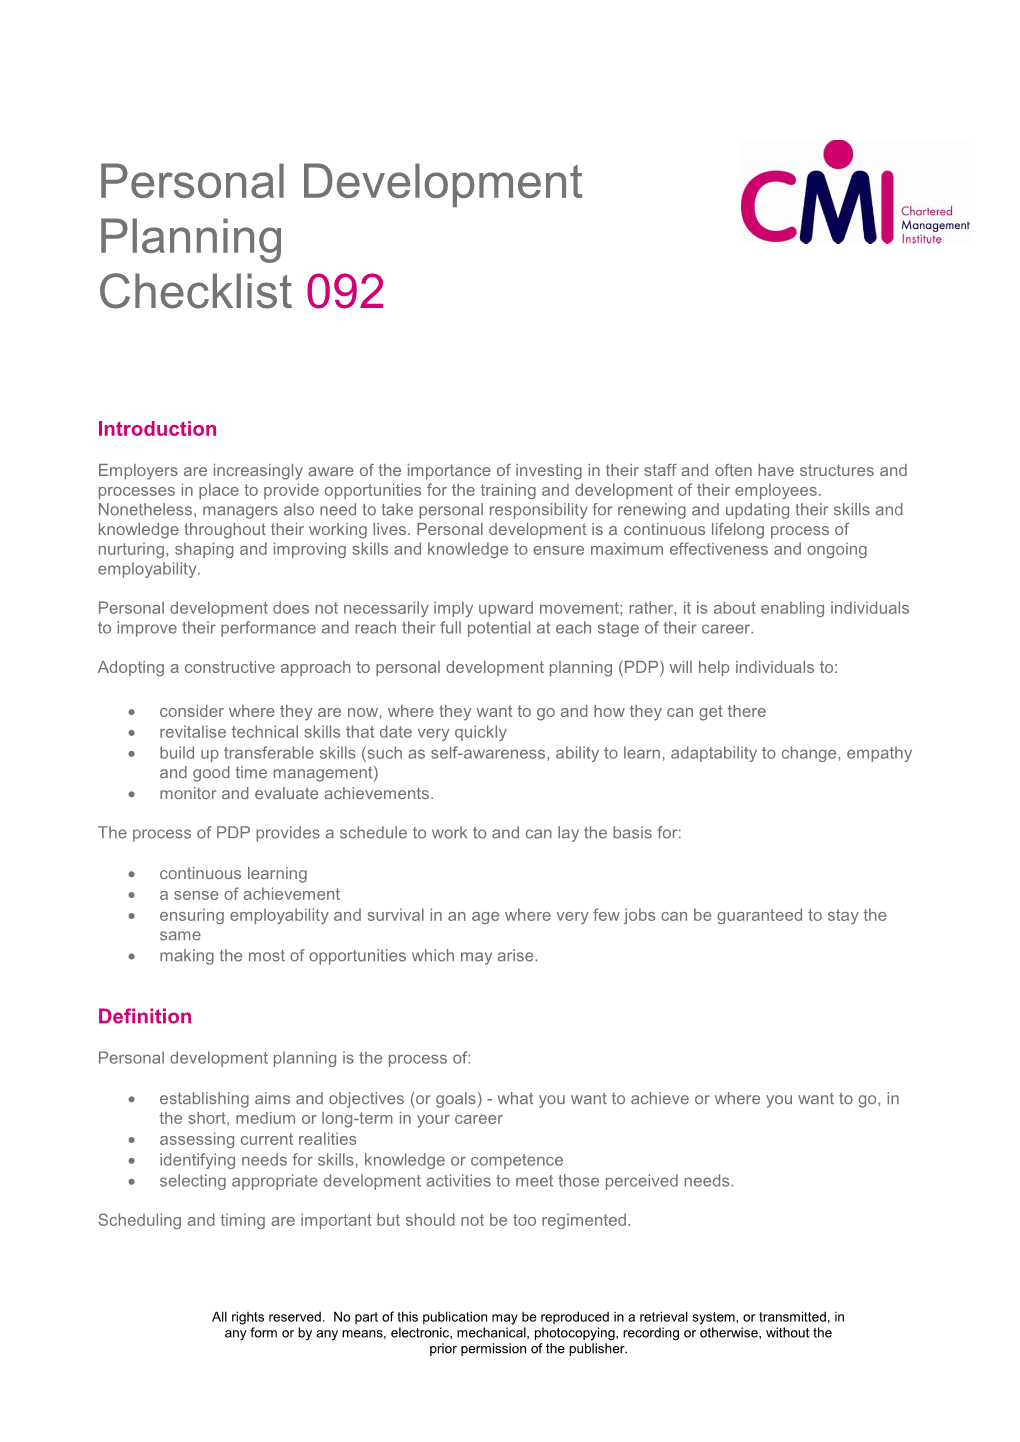 Personal Development Planning Checklist 092